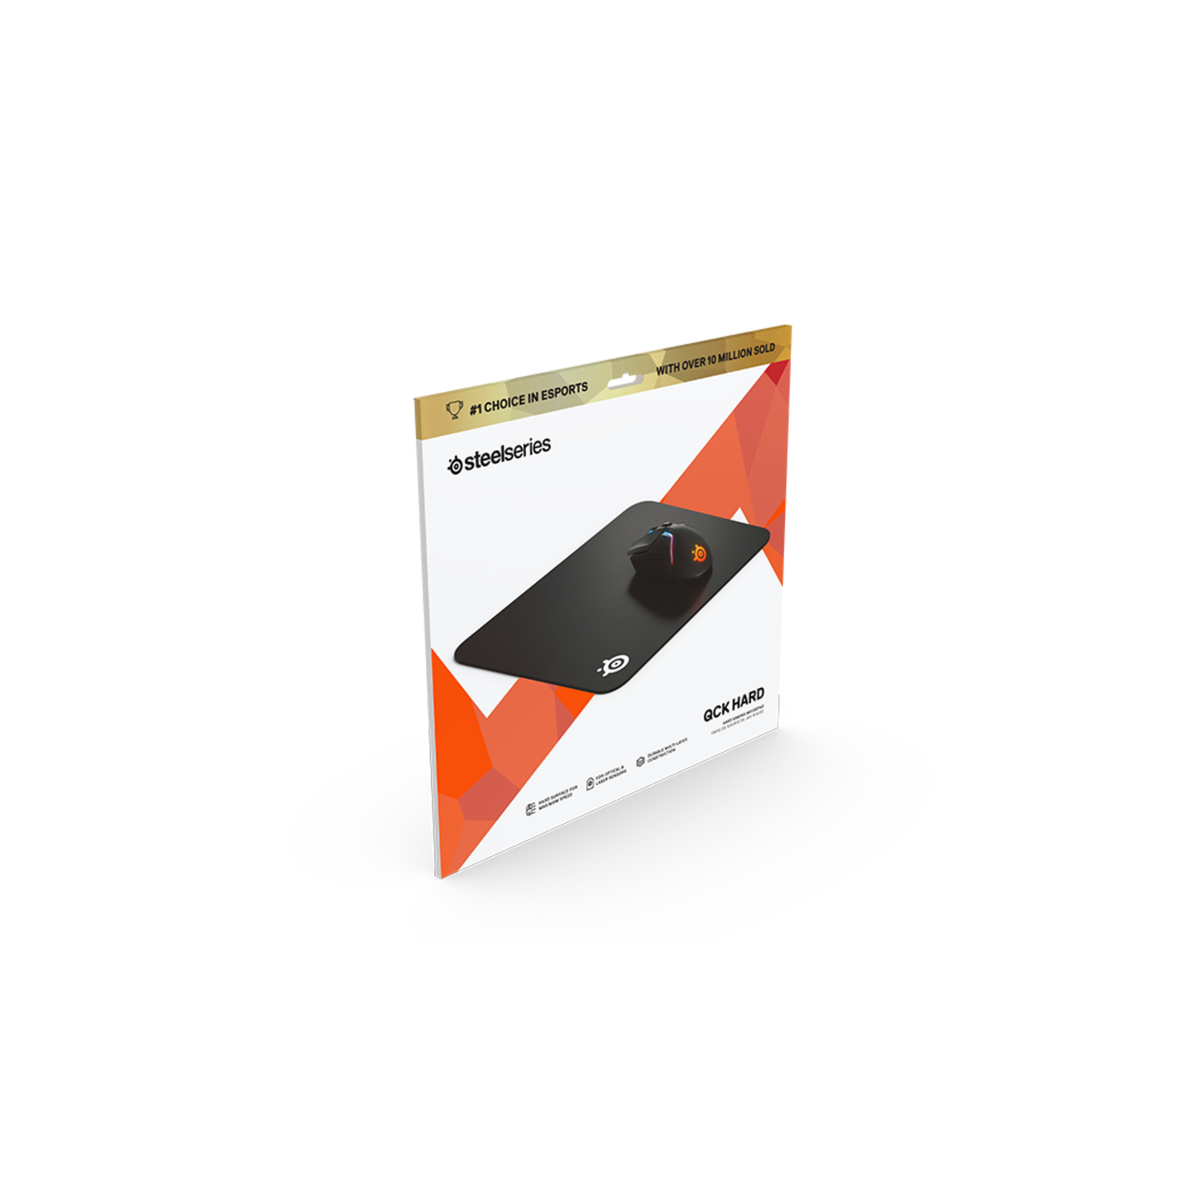 Steelseries Gaming MousePad 63821, Black, QCK HARD 63821